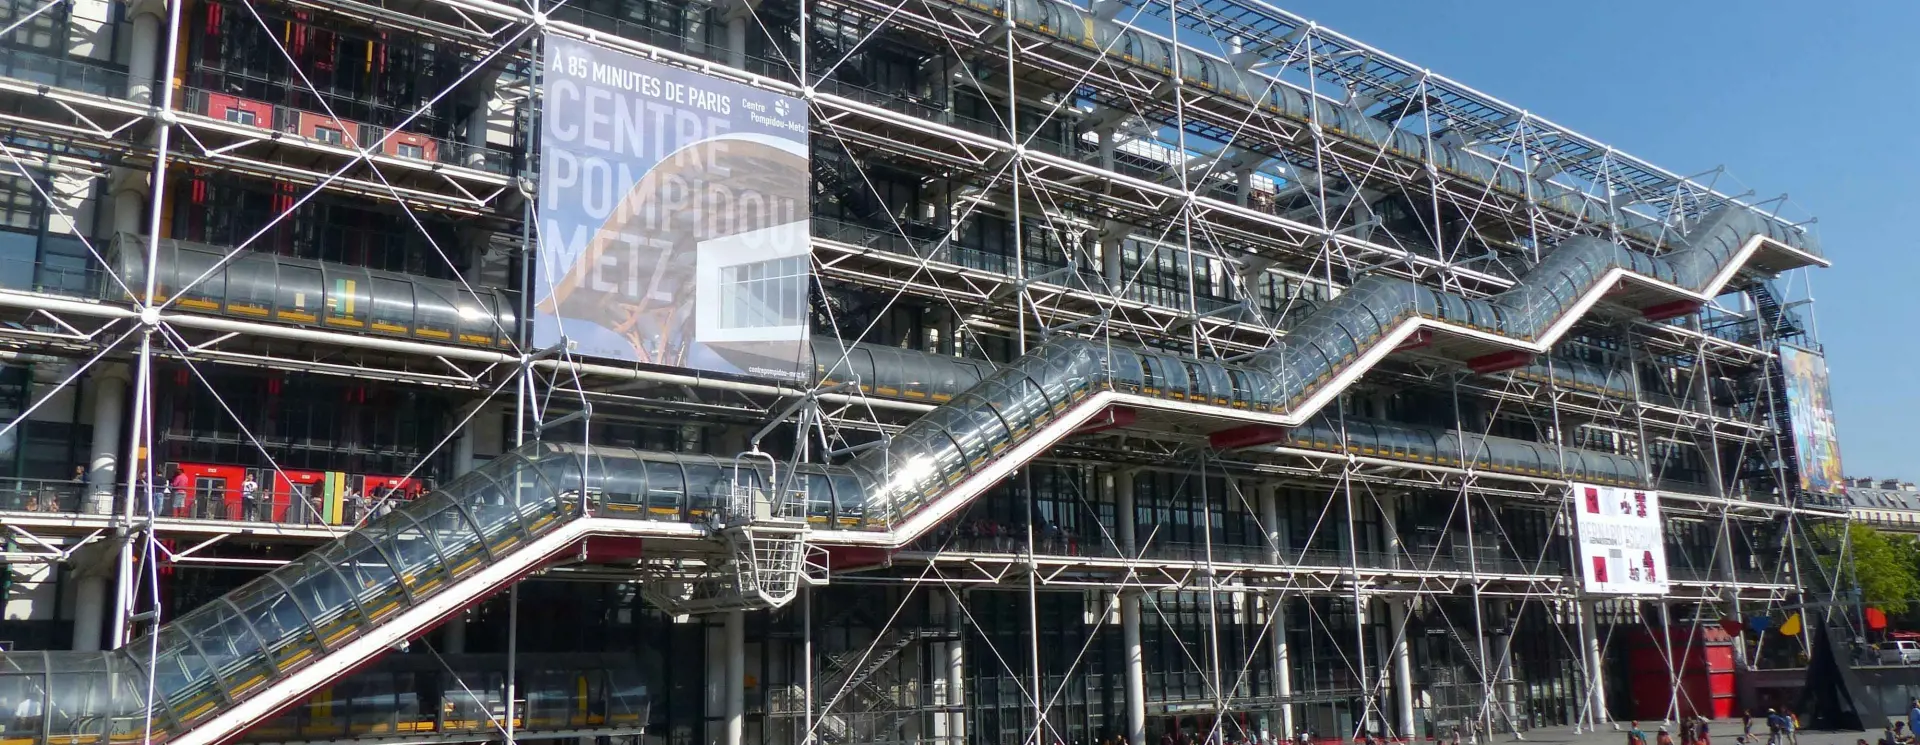 cover centre pompidou in parijs sluit in 2023 voor renovatie